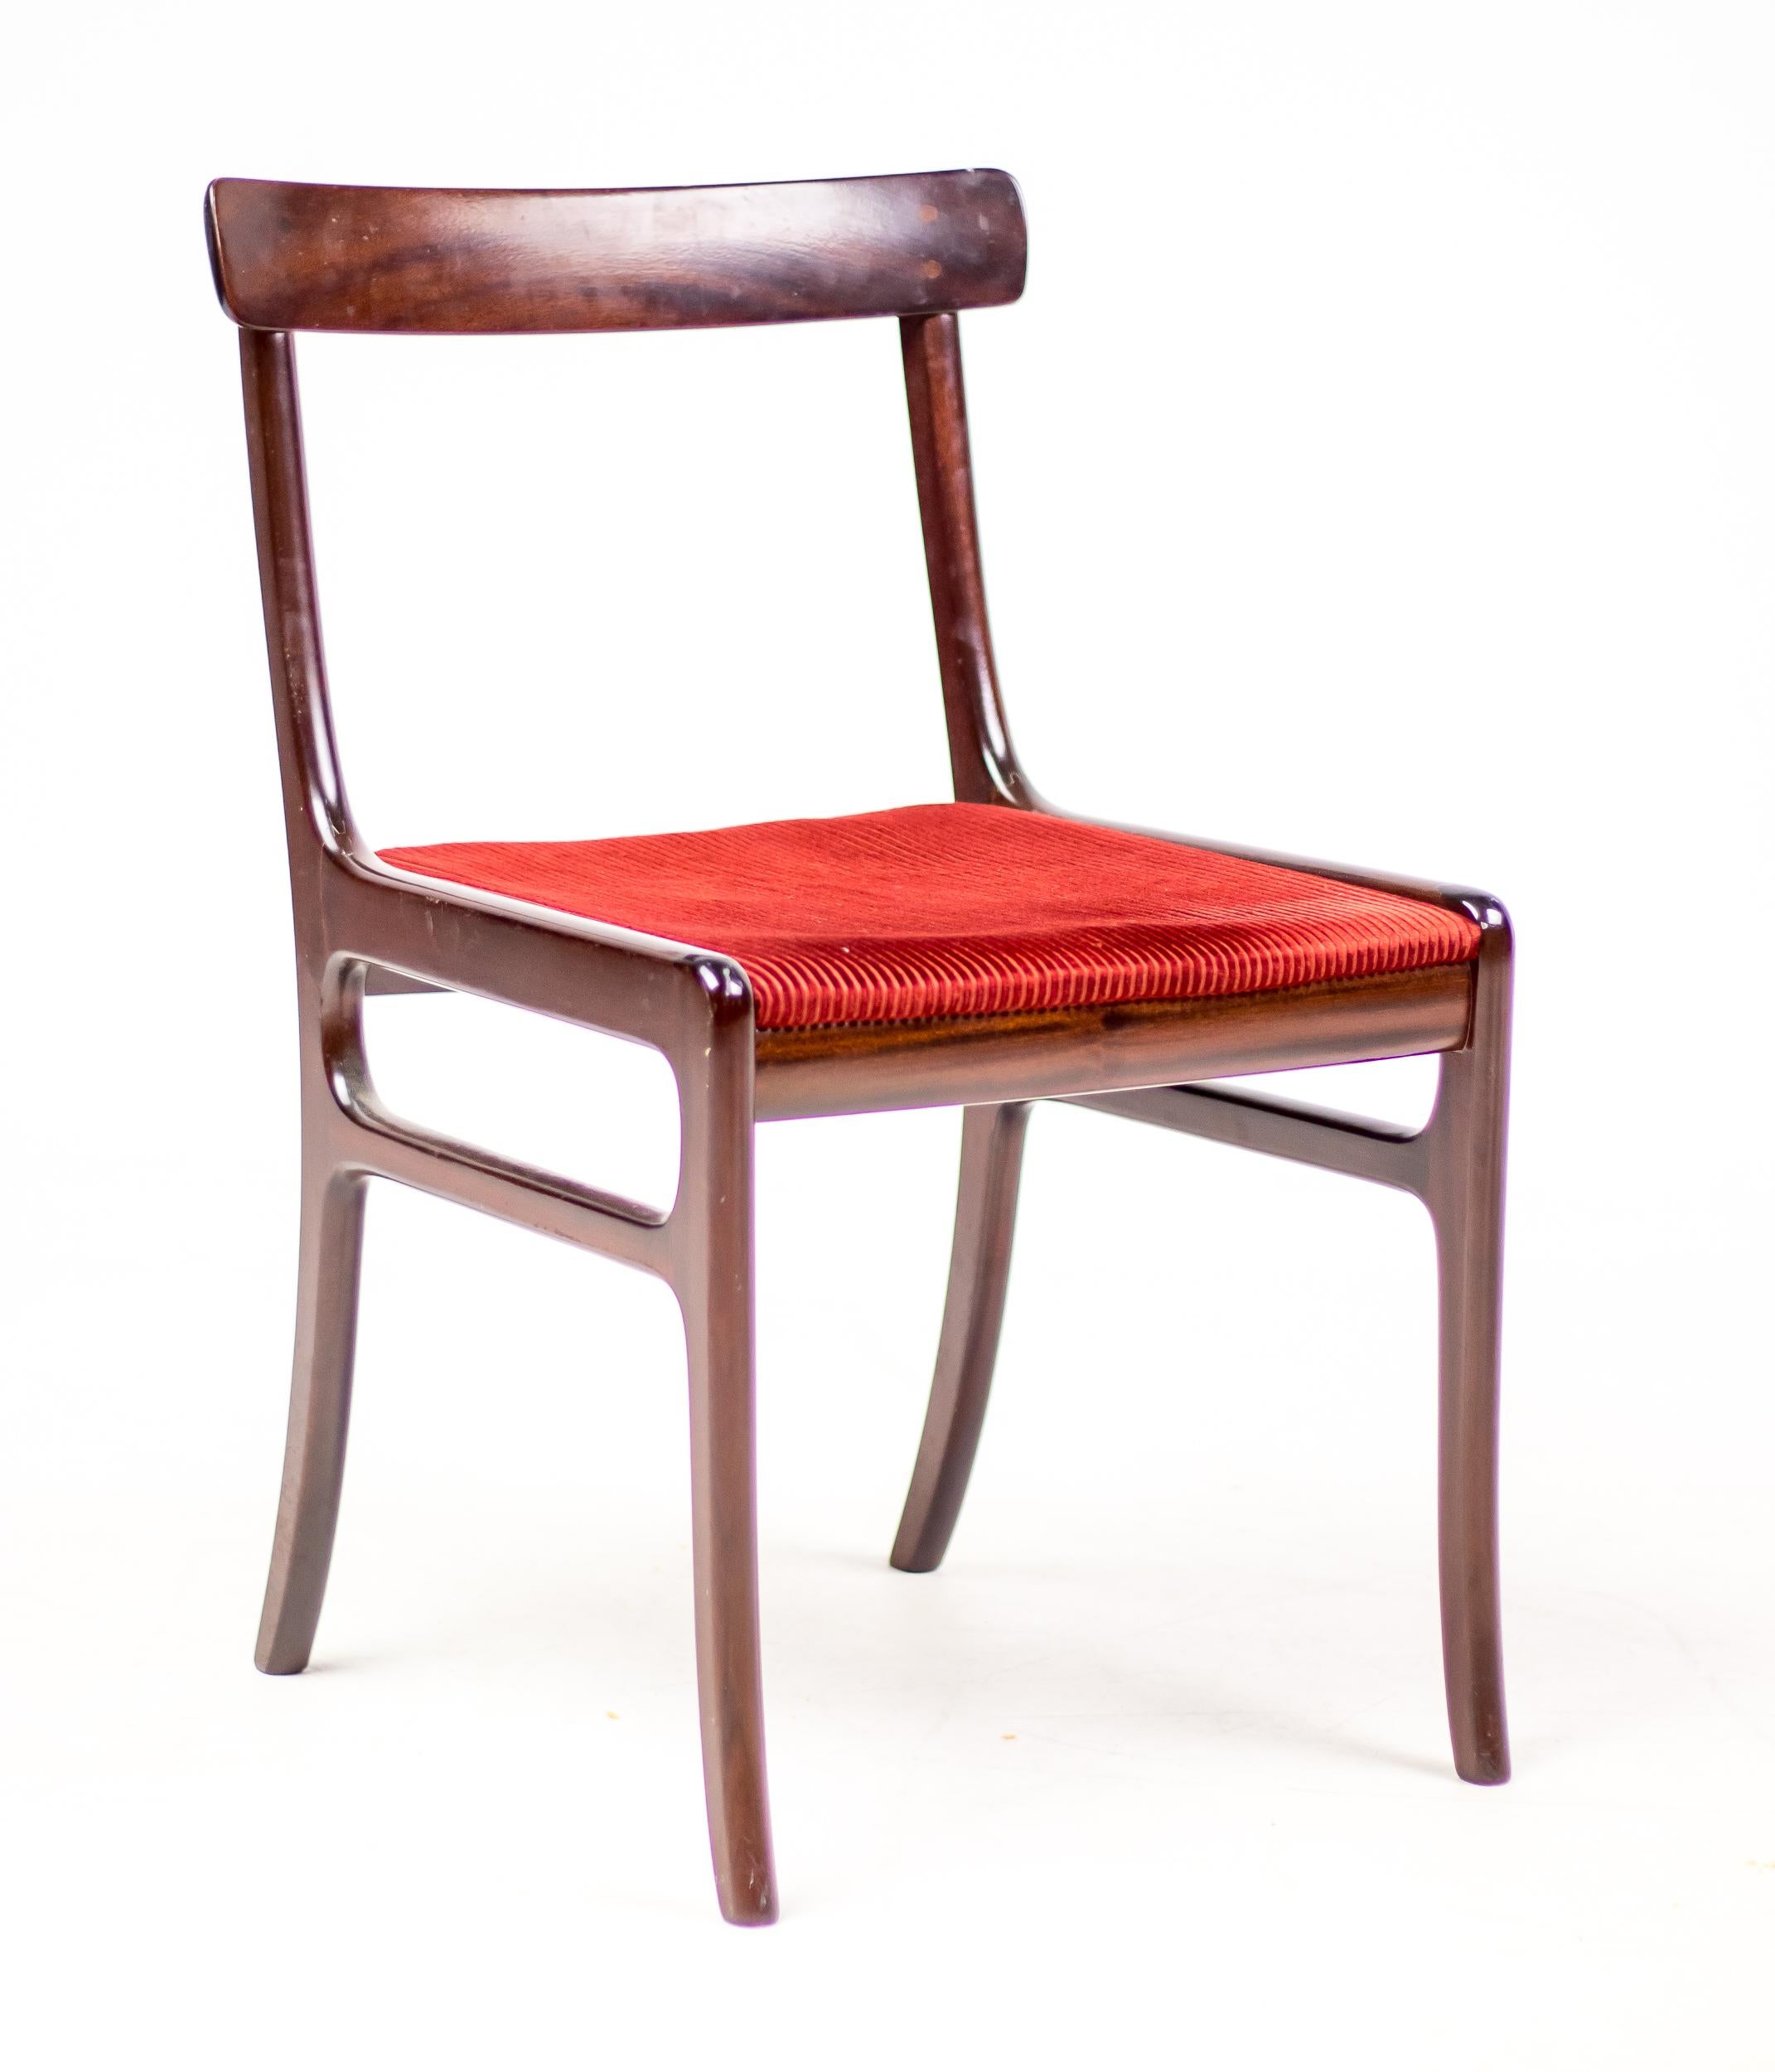 Ole Wanscher pour P. Jeppesen, ensemble de 4 chaises de salle à manger, modèle 'Rungstedlund' PJ 34, en acajou et tapissé de velours rouge, Danemark, années 1960. 
Marqué d'un médaillon en argent PJ.

Ces chaises de salle à manger classiques ont été